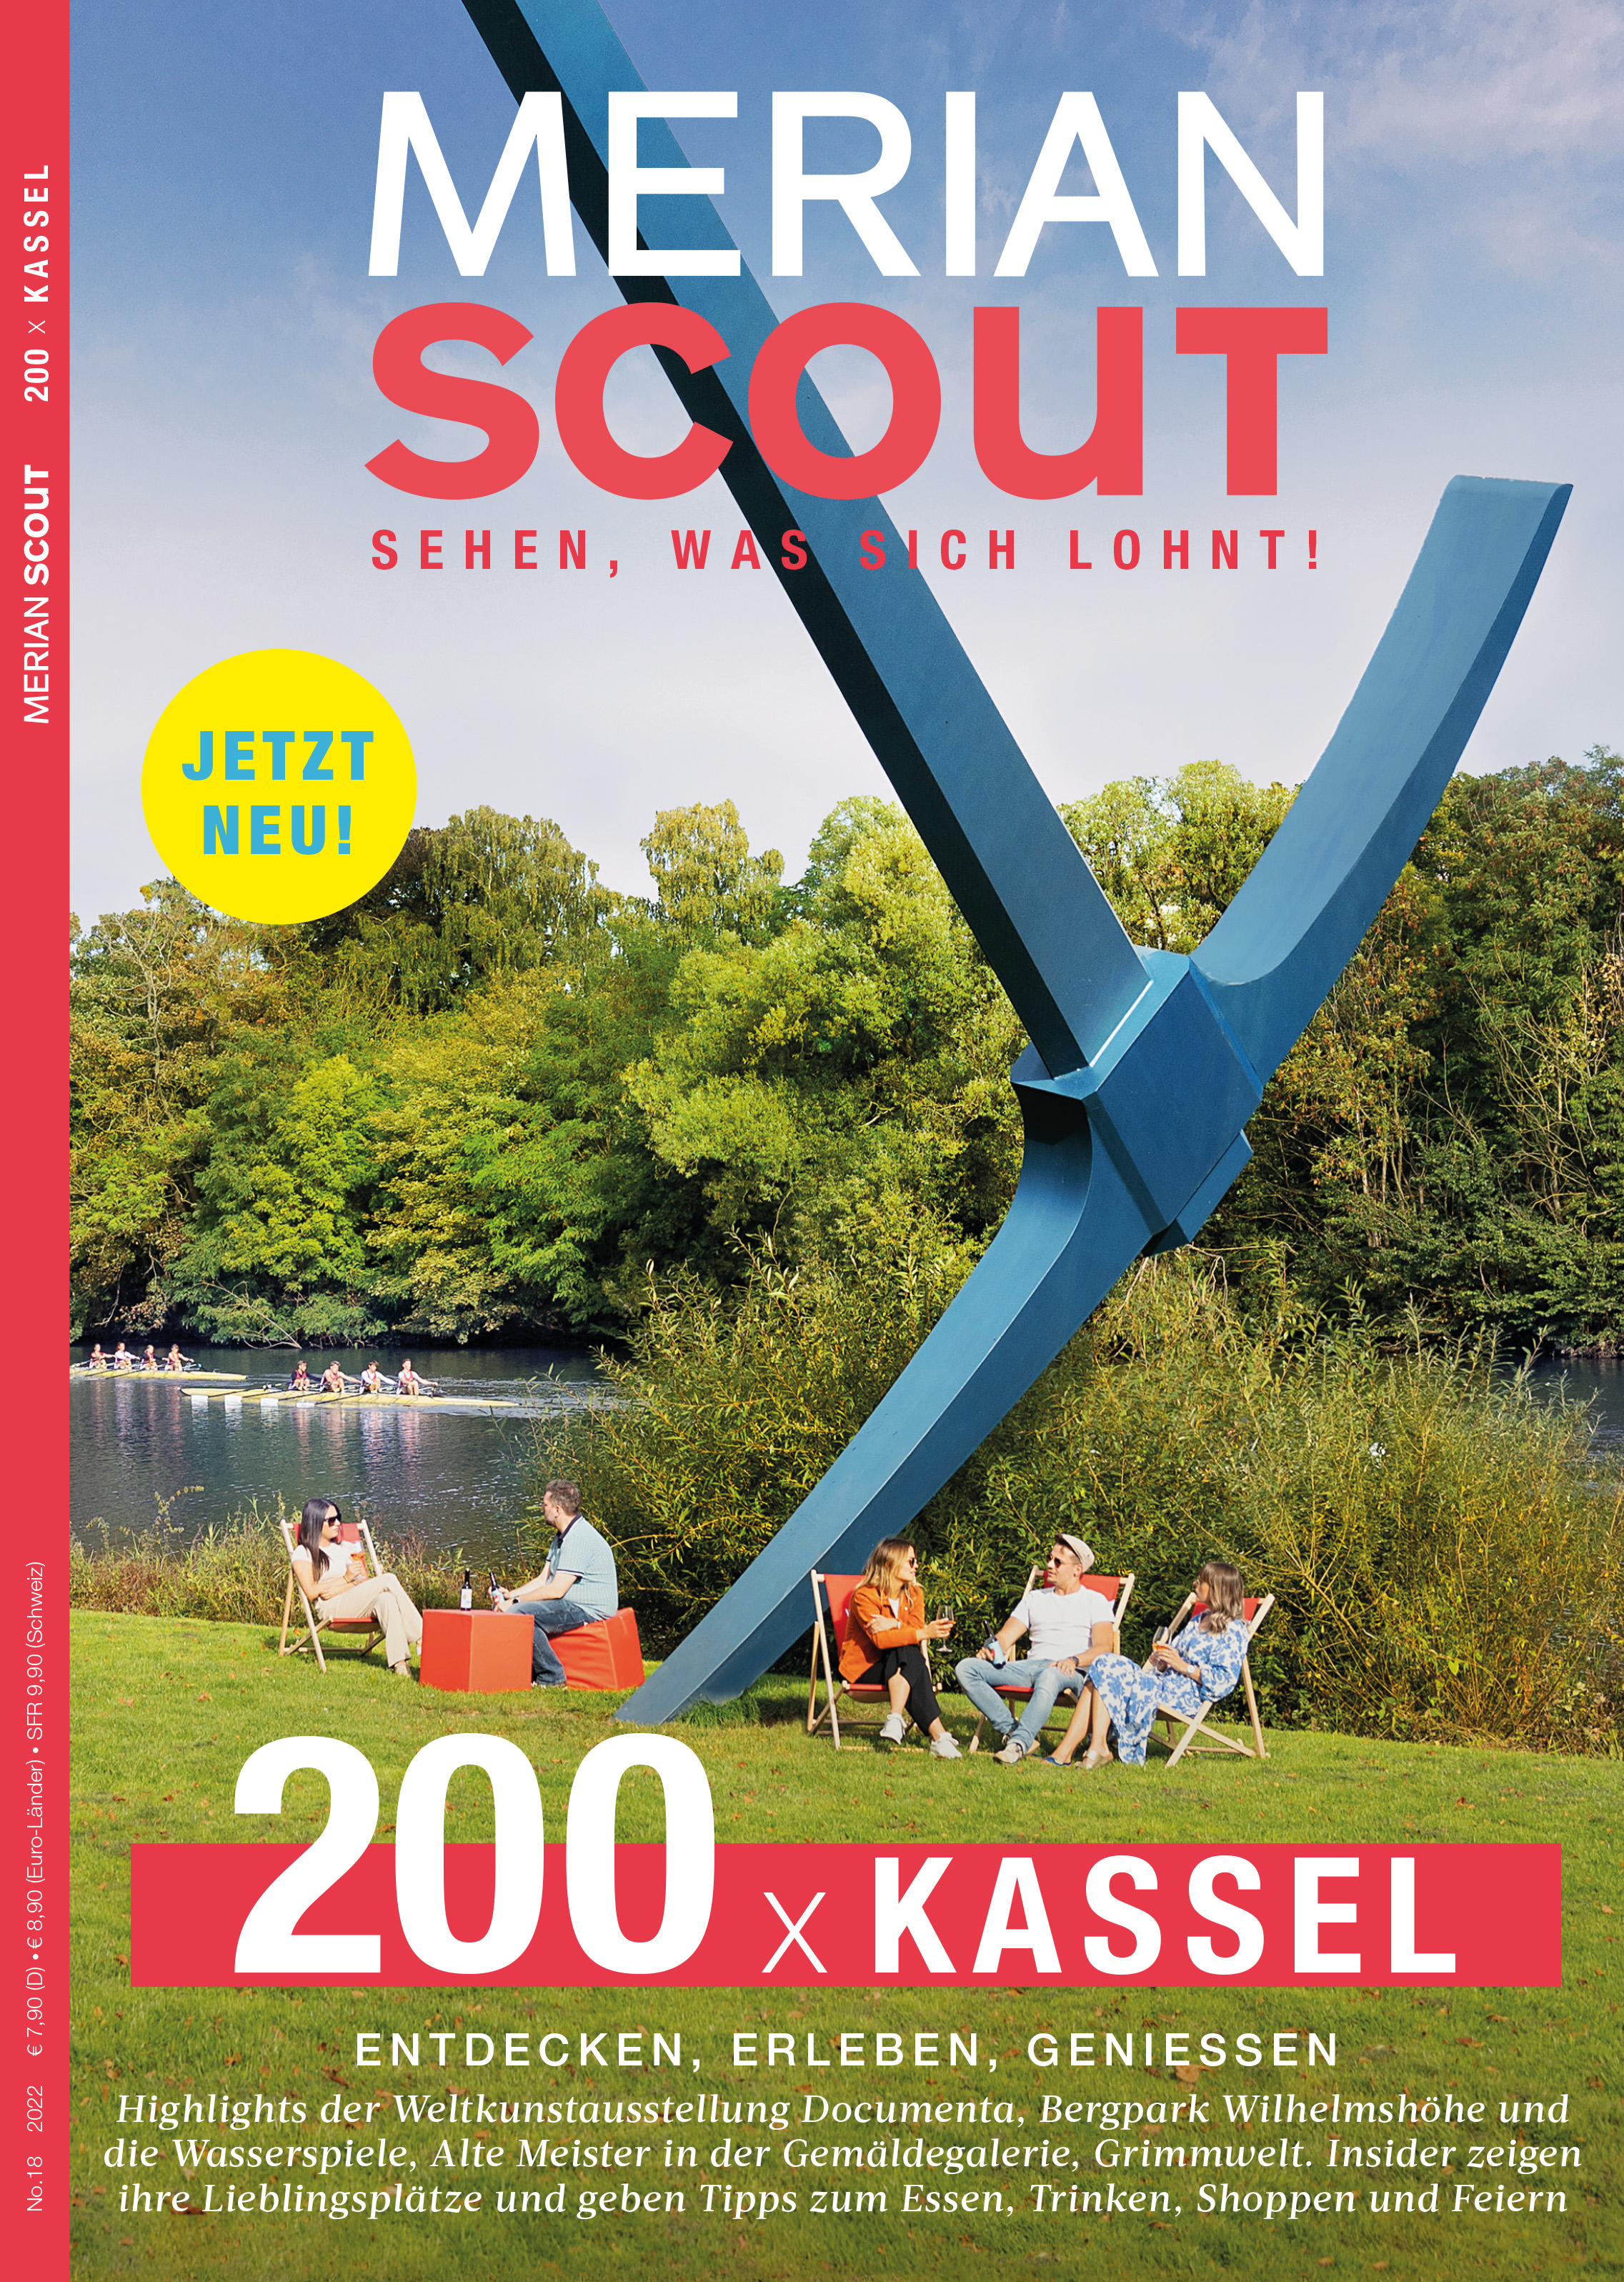 MERIAN Scout 18/2022 Kassel